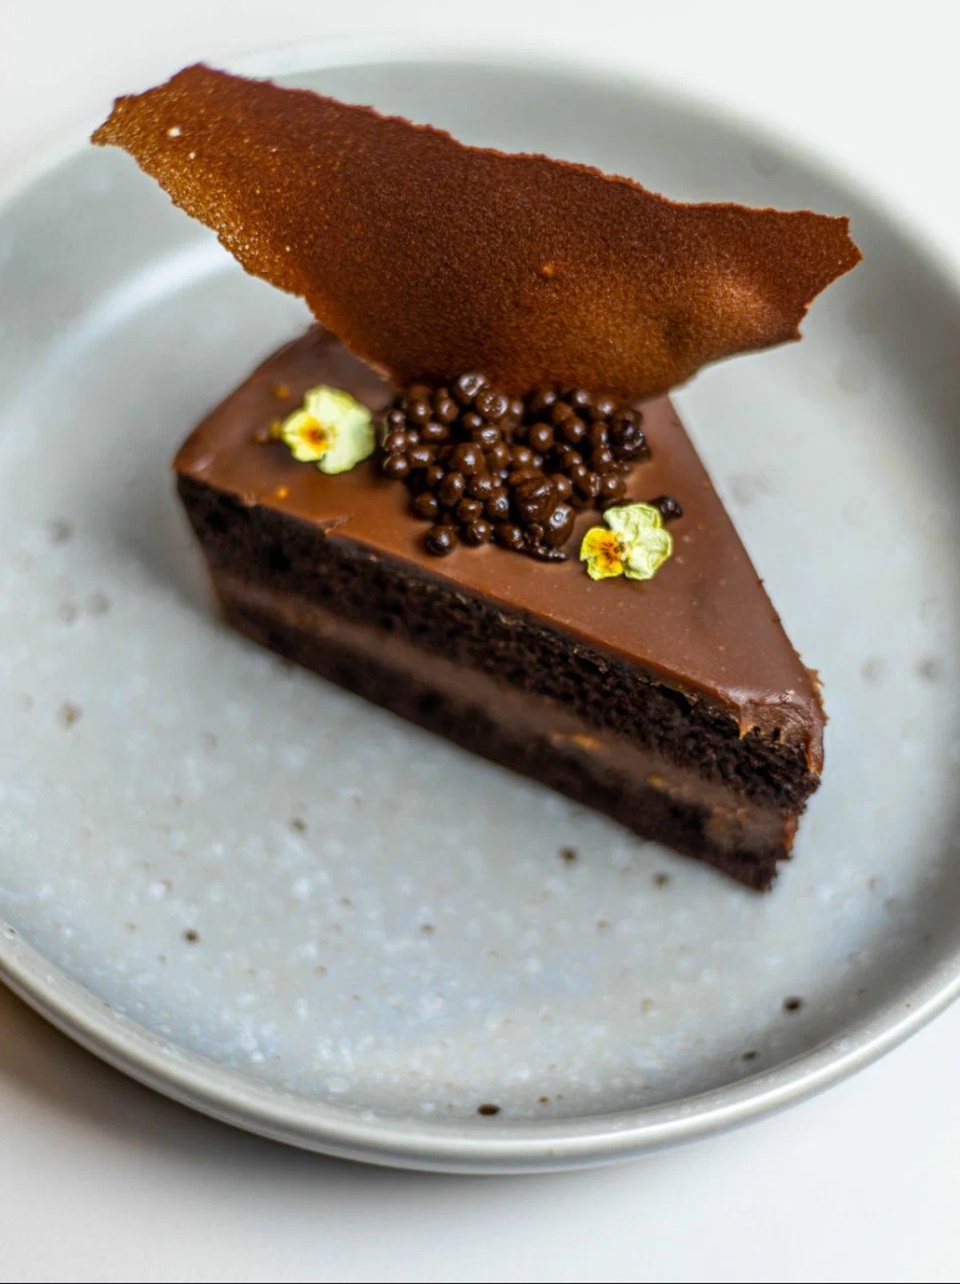 Шоколадный торт с ореховым ганашем - 420 ₽, заказать онлайн.